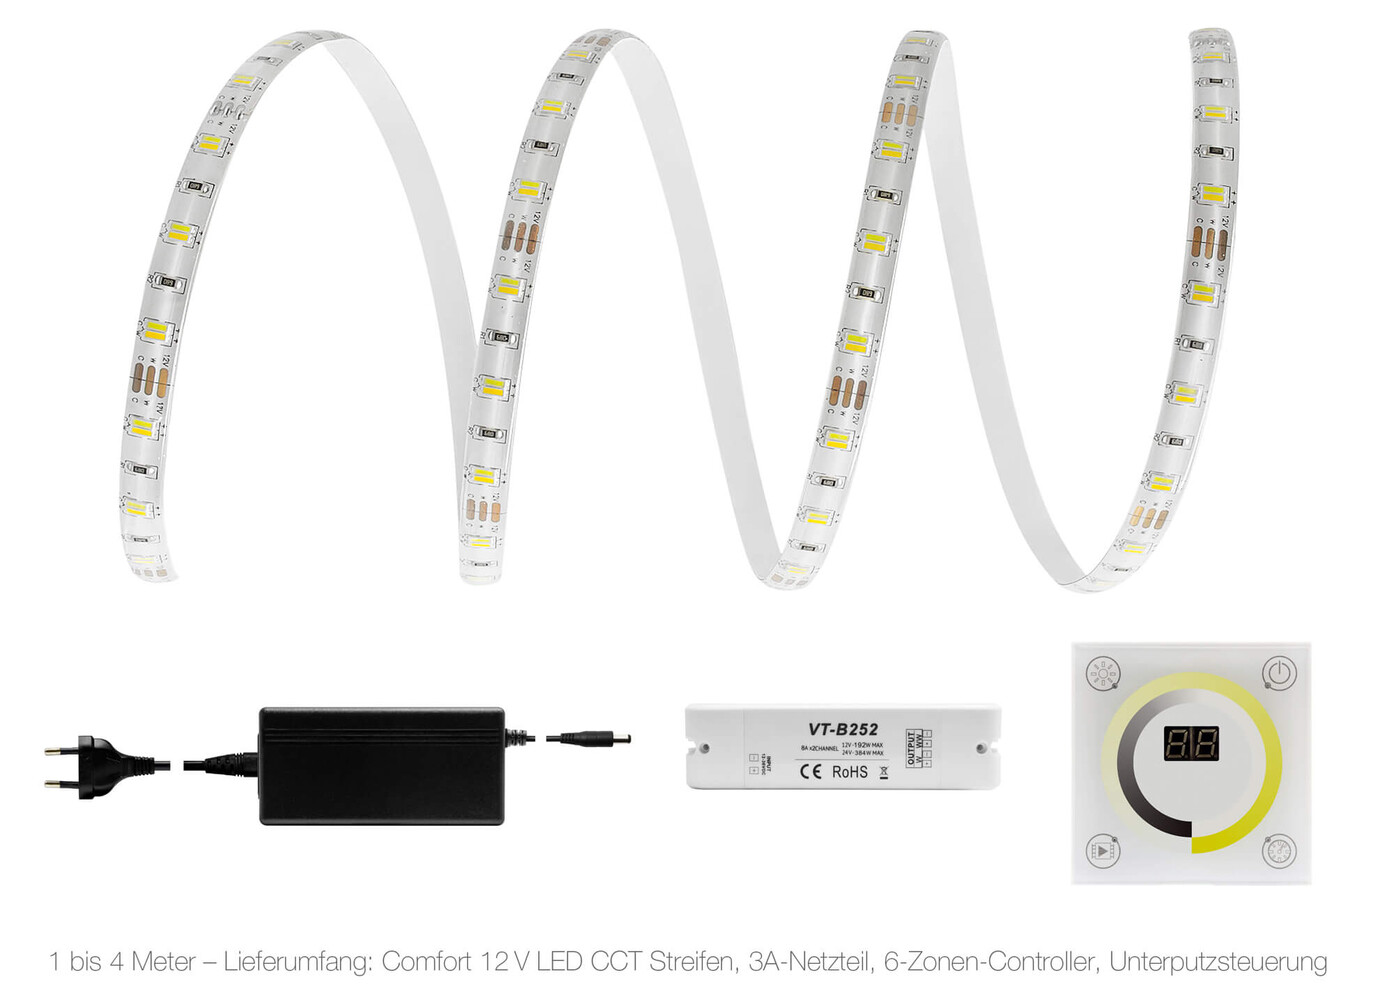 Hochwertiger LED Streifen von LED Universum für den bestmöglichen Komfort